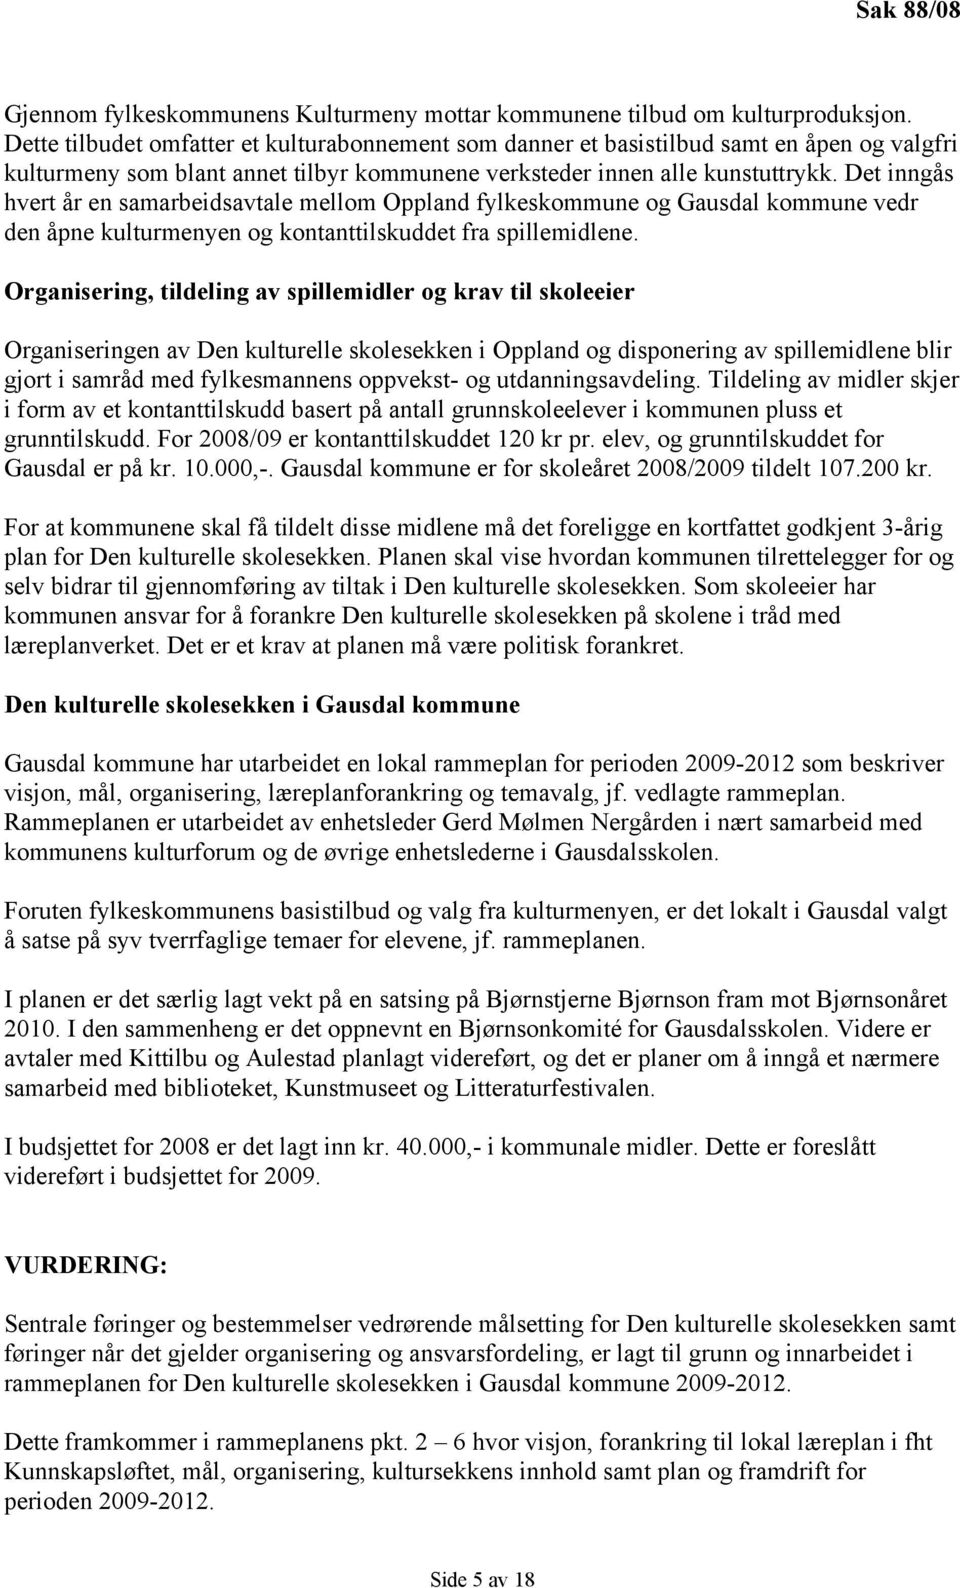 Det inngås hvert år en samarbeidsavtale mellom Oppland fylkeskommune og Gausdal kommune vedr den åpne kulturmenyen og kontanttilskuddet fra spillemidlene.